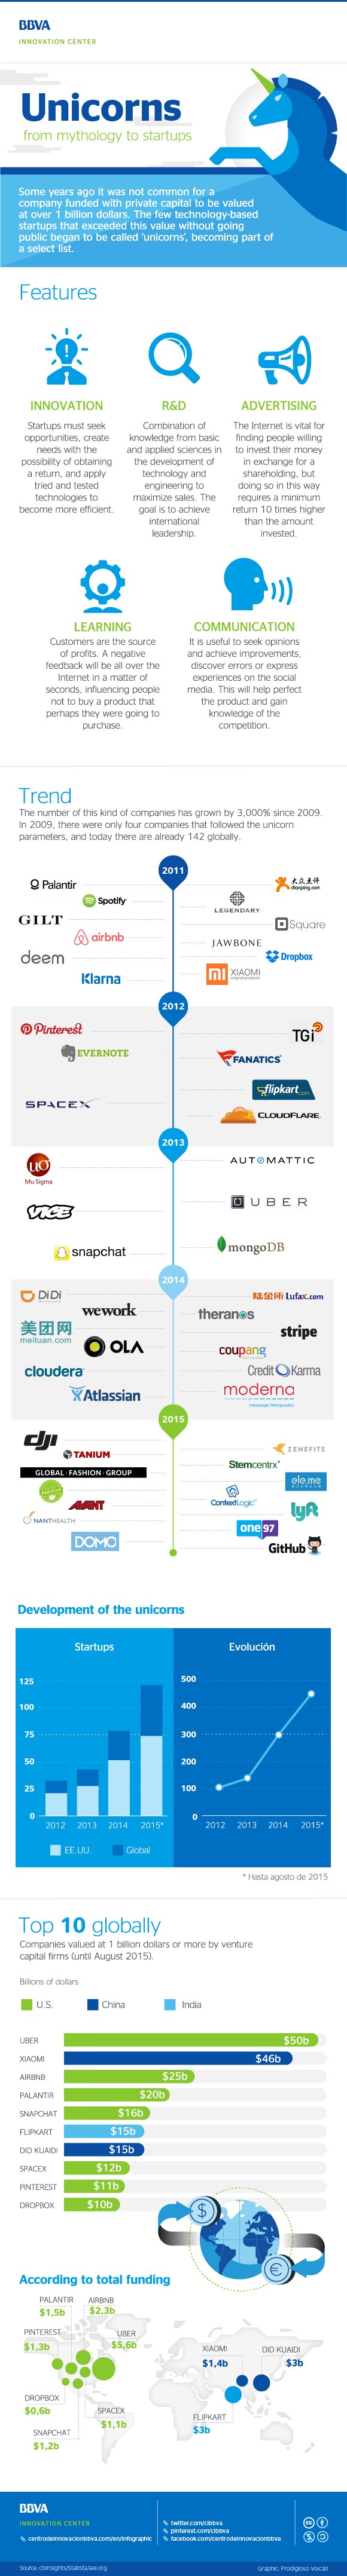 cibbva-infographic-unicorns-startups-01